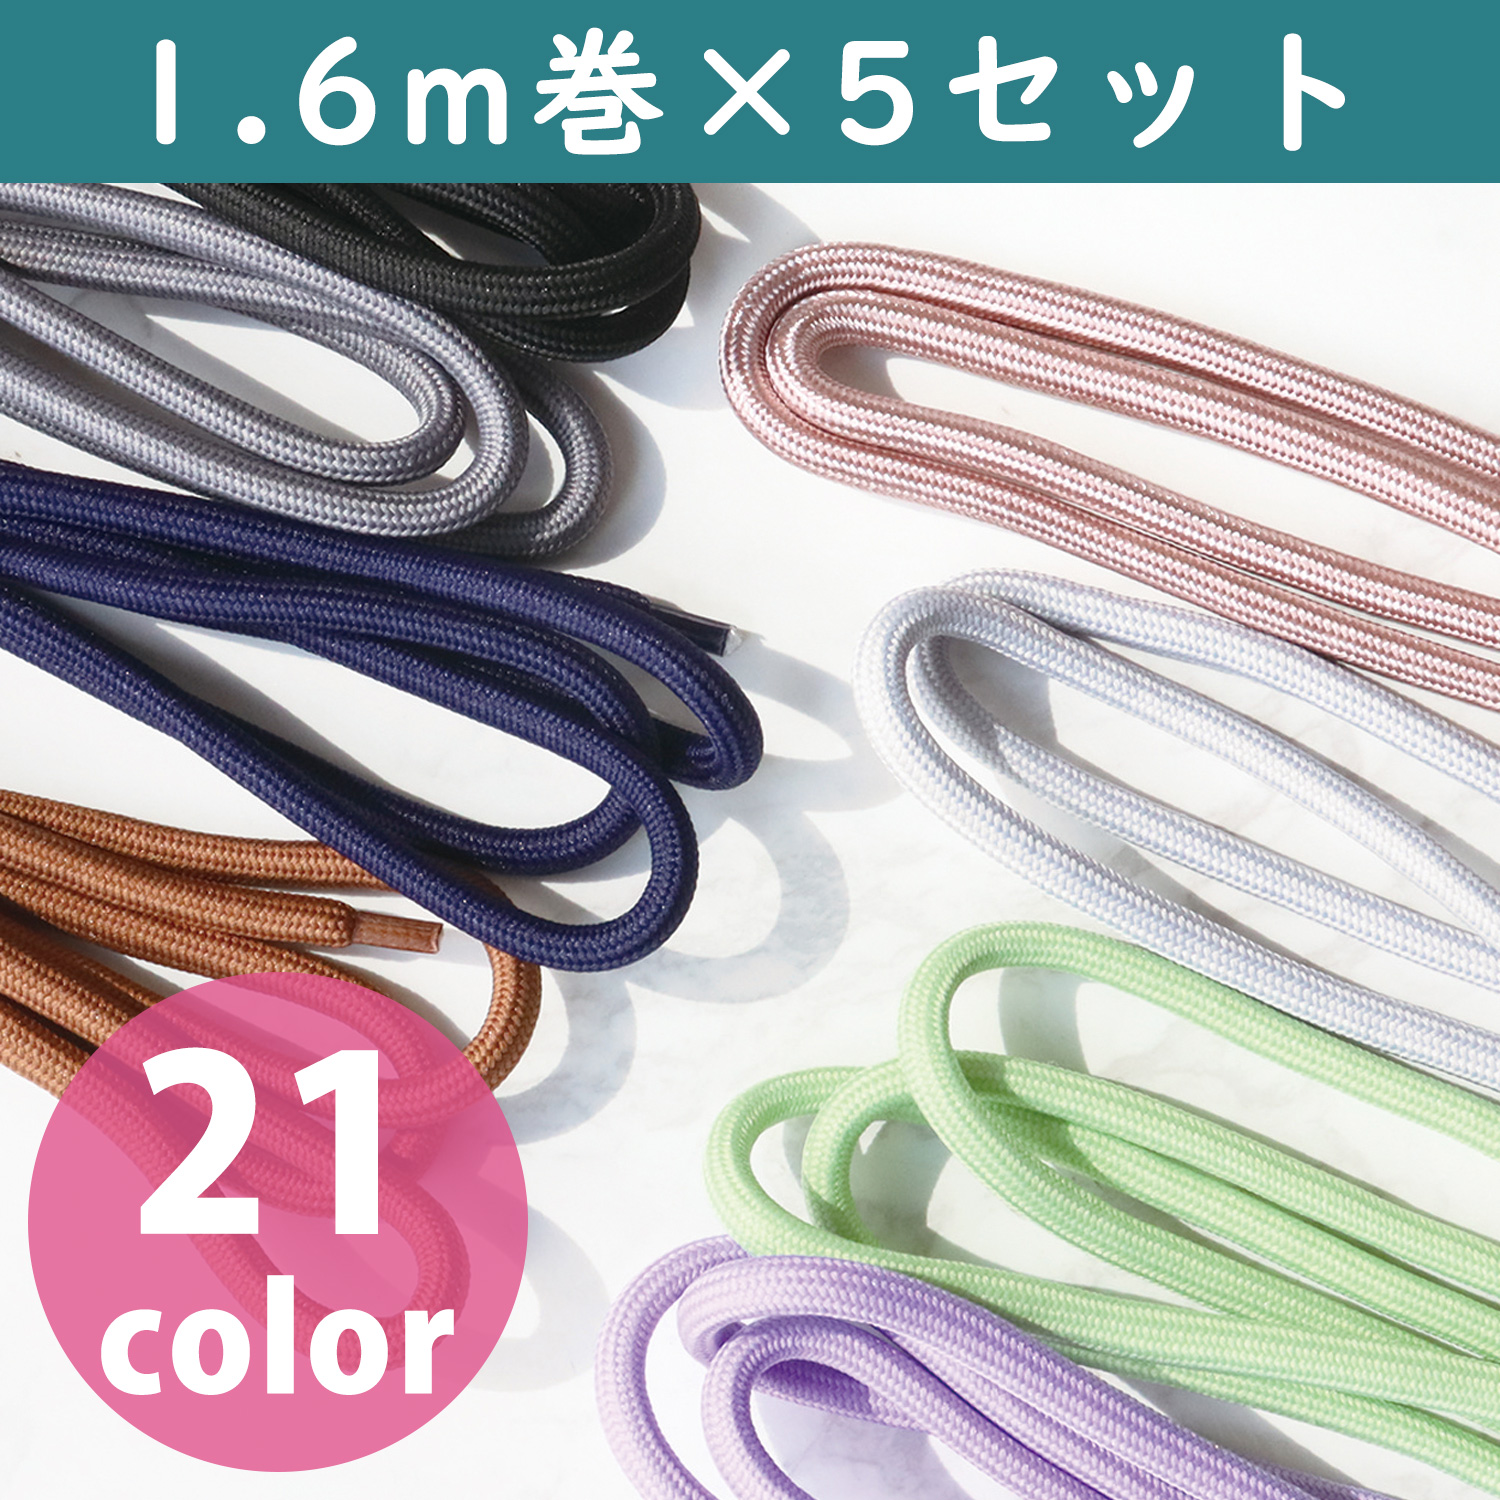 KEC550-CUT5P Polyester cord 1.6m×5set (セット)